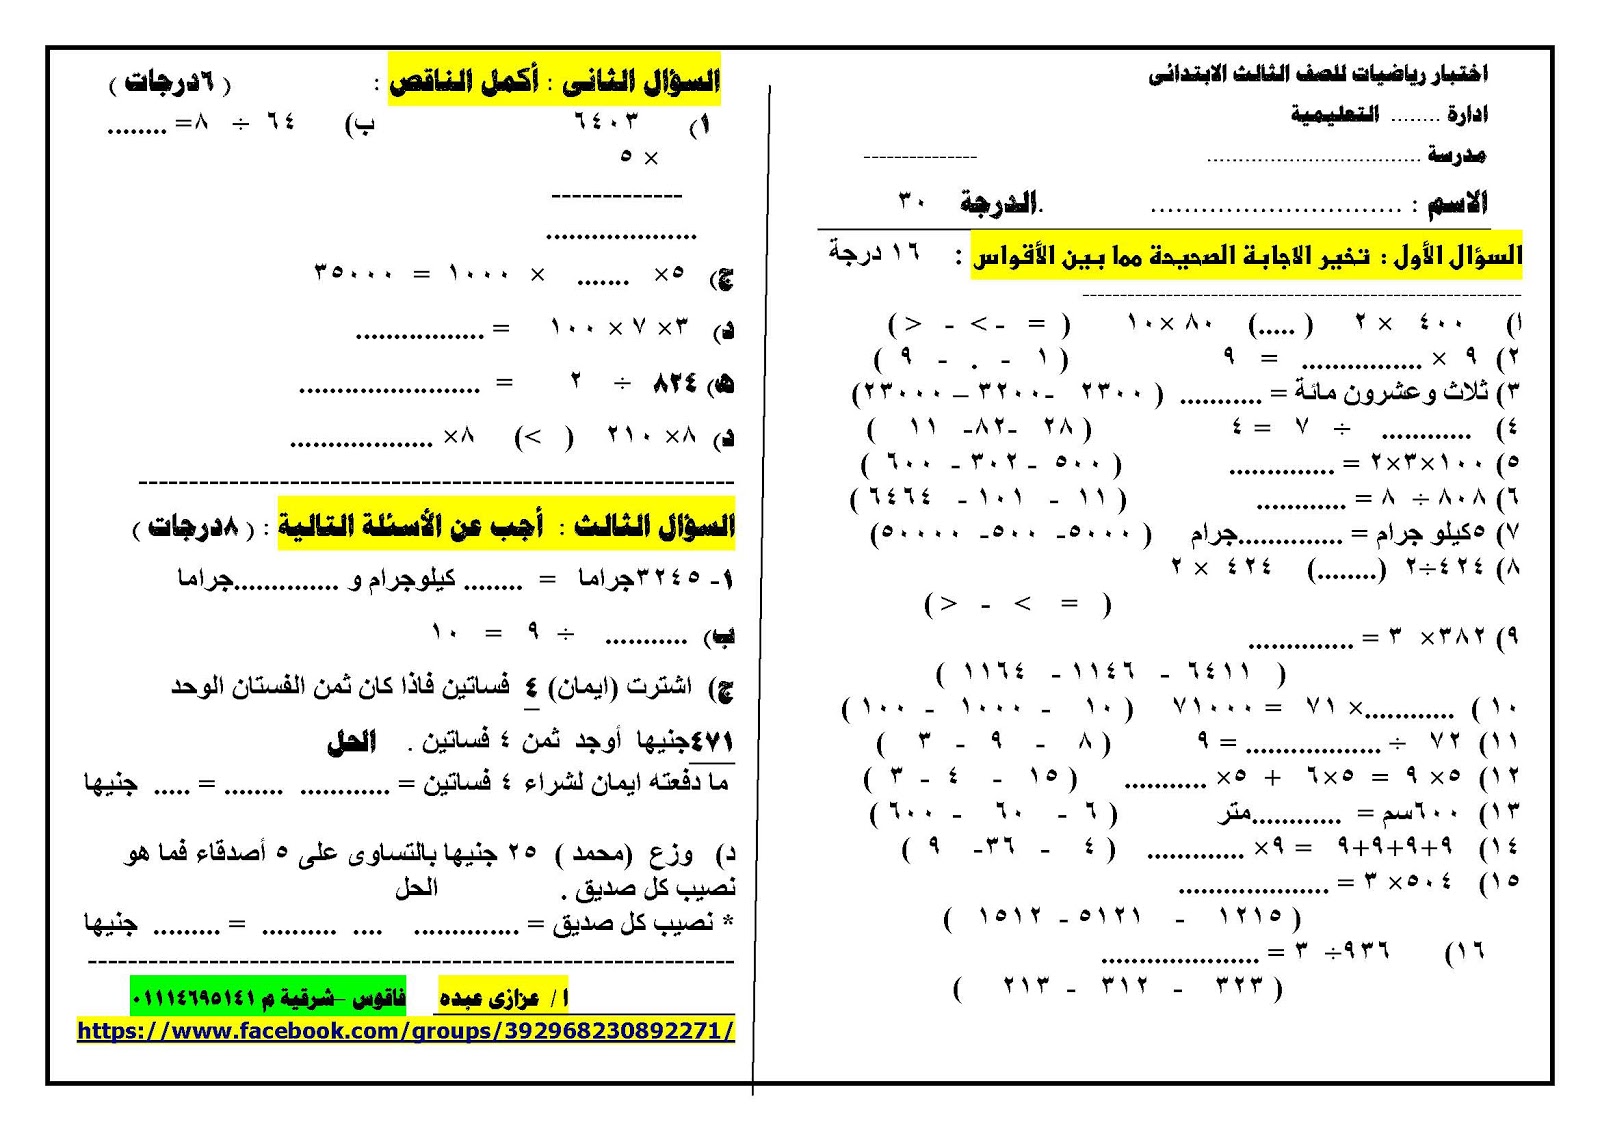 للميدترم2: امتحان لمادة اللغة العربية وامتحان للرياضيات للصف الثالث الابتدائى + نماذج الاجابة _2016_2016_Page_3